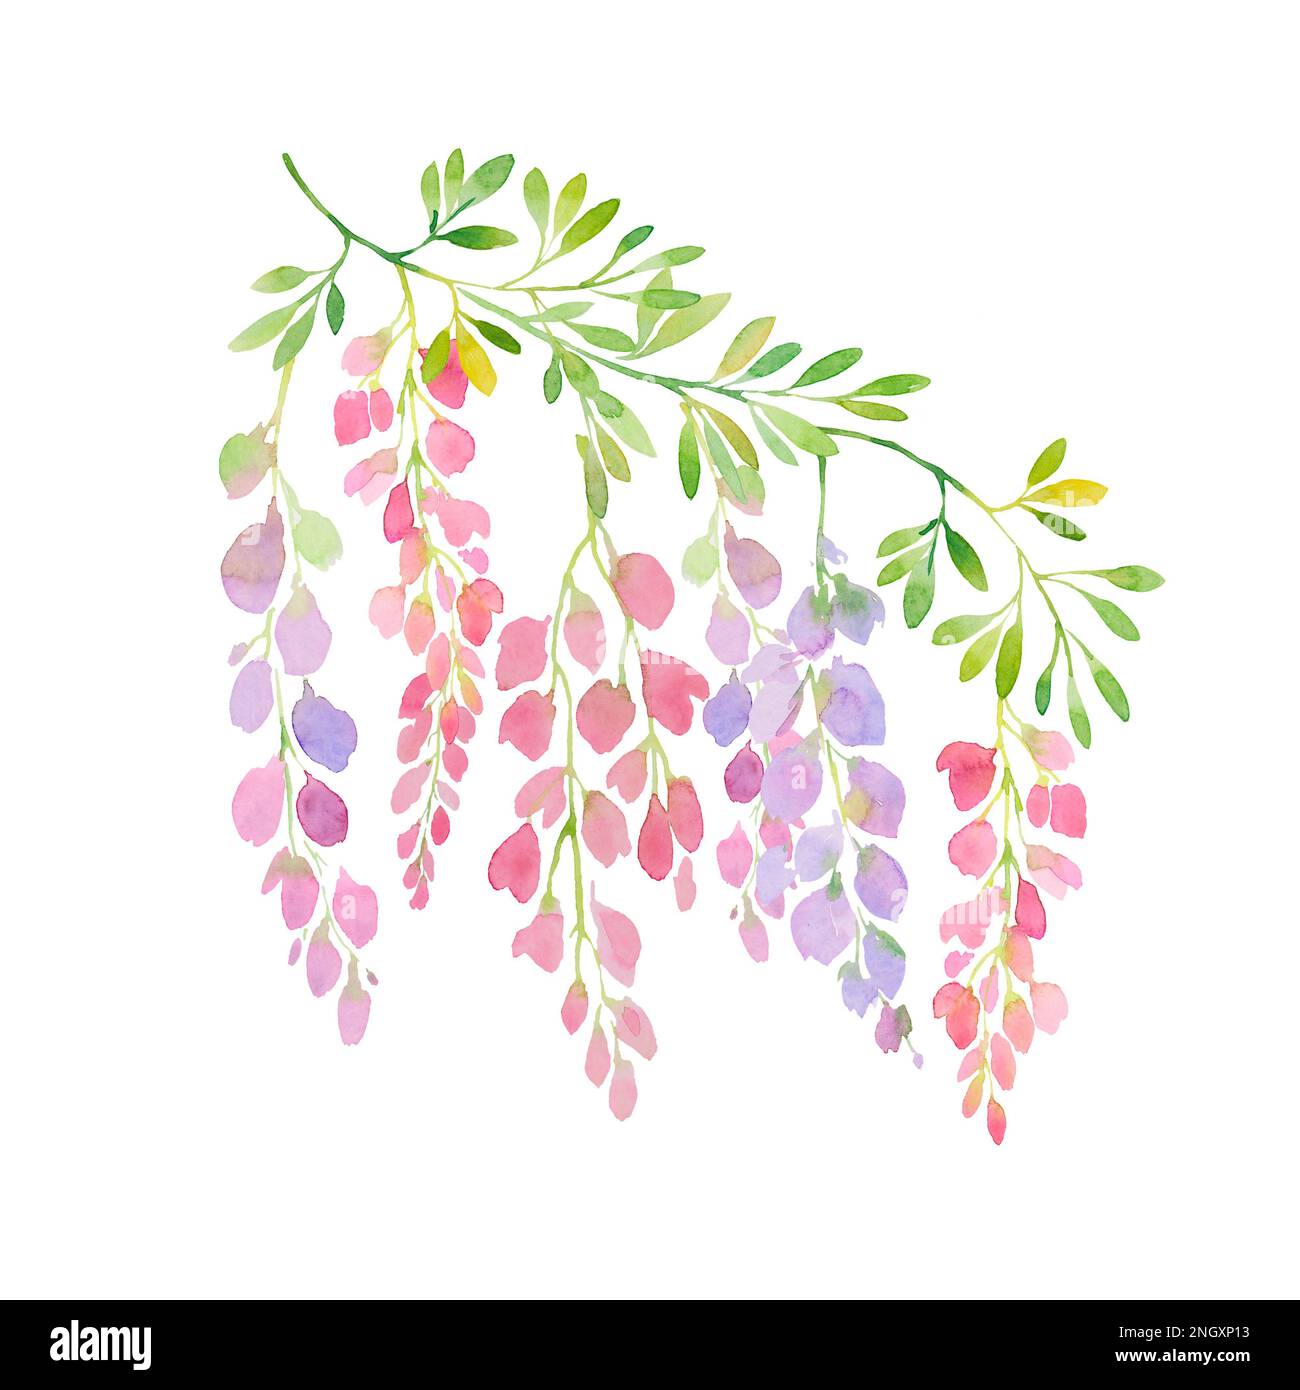 watercolor wisteria branch Stock Photo